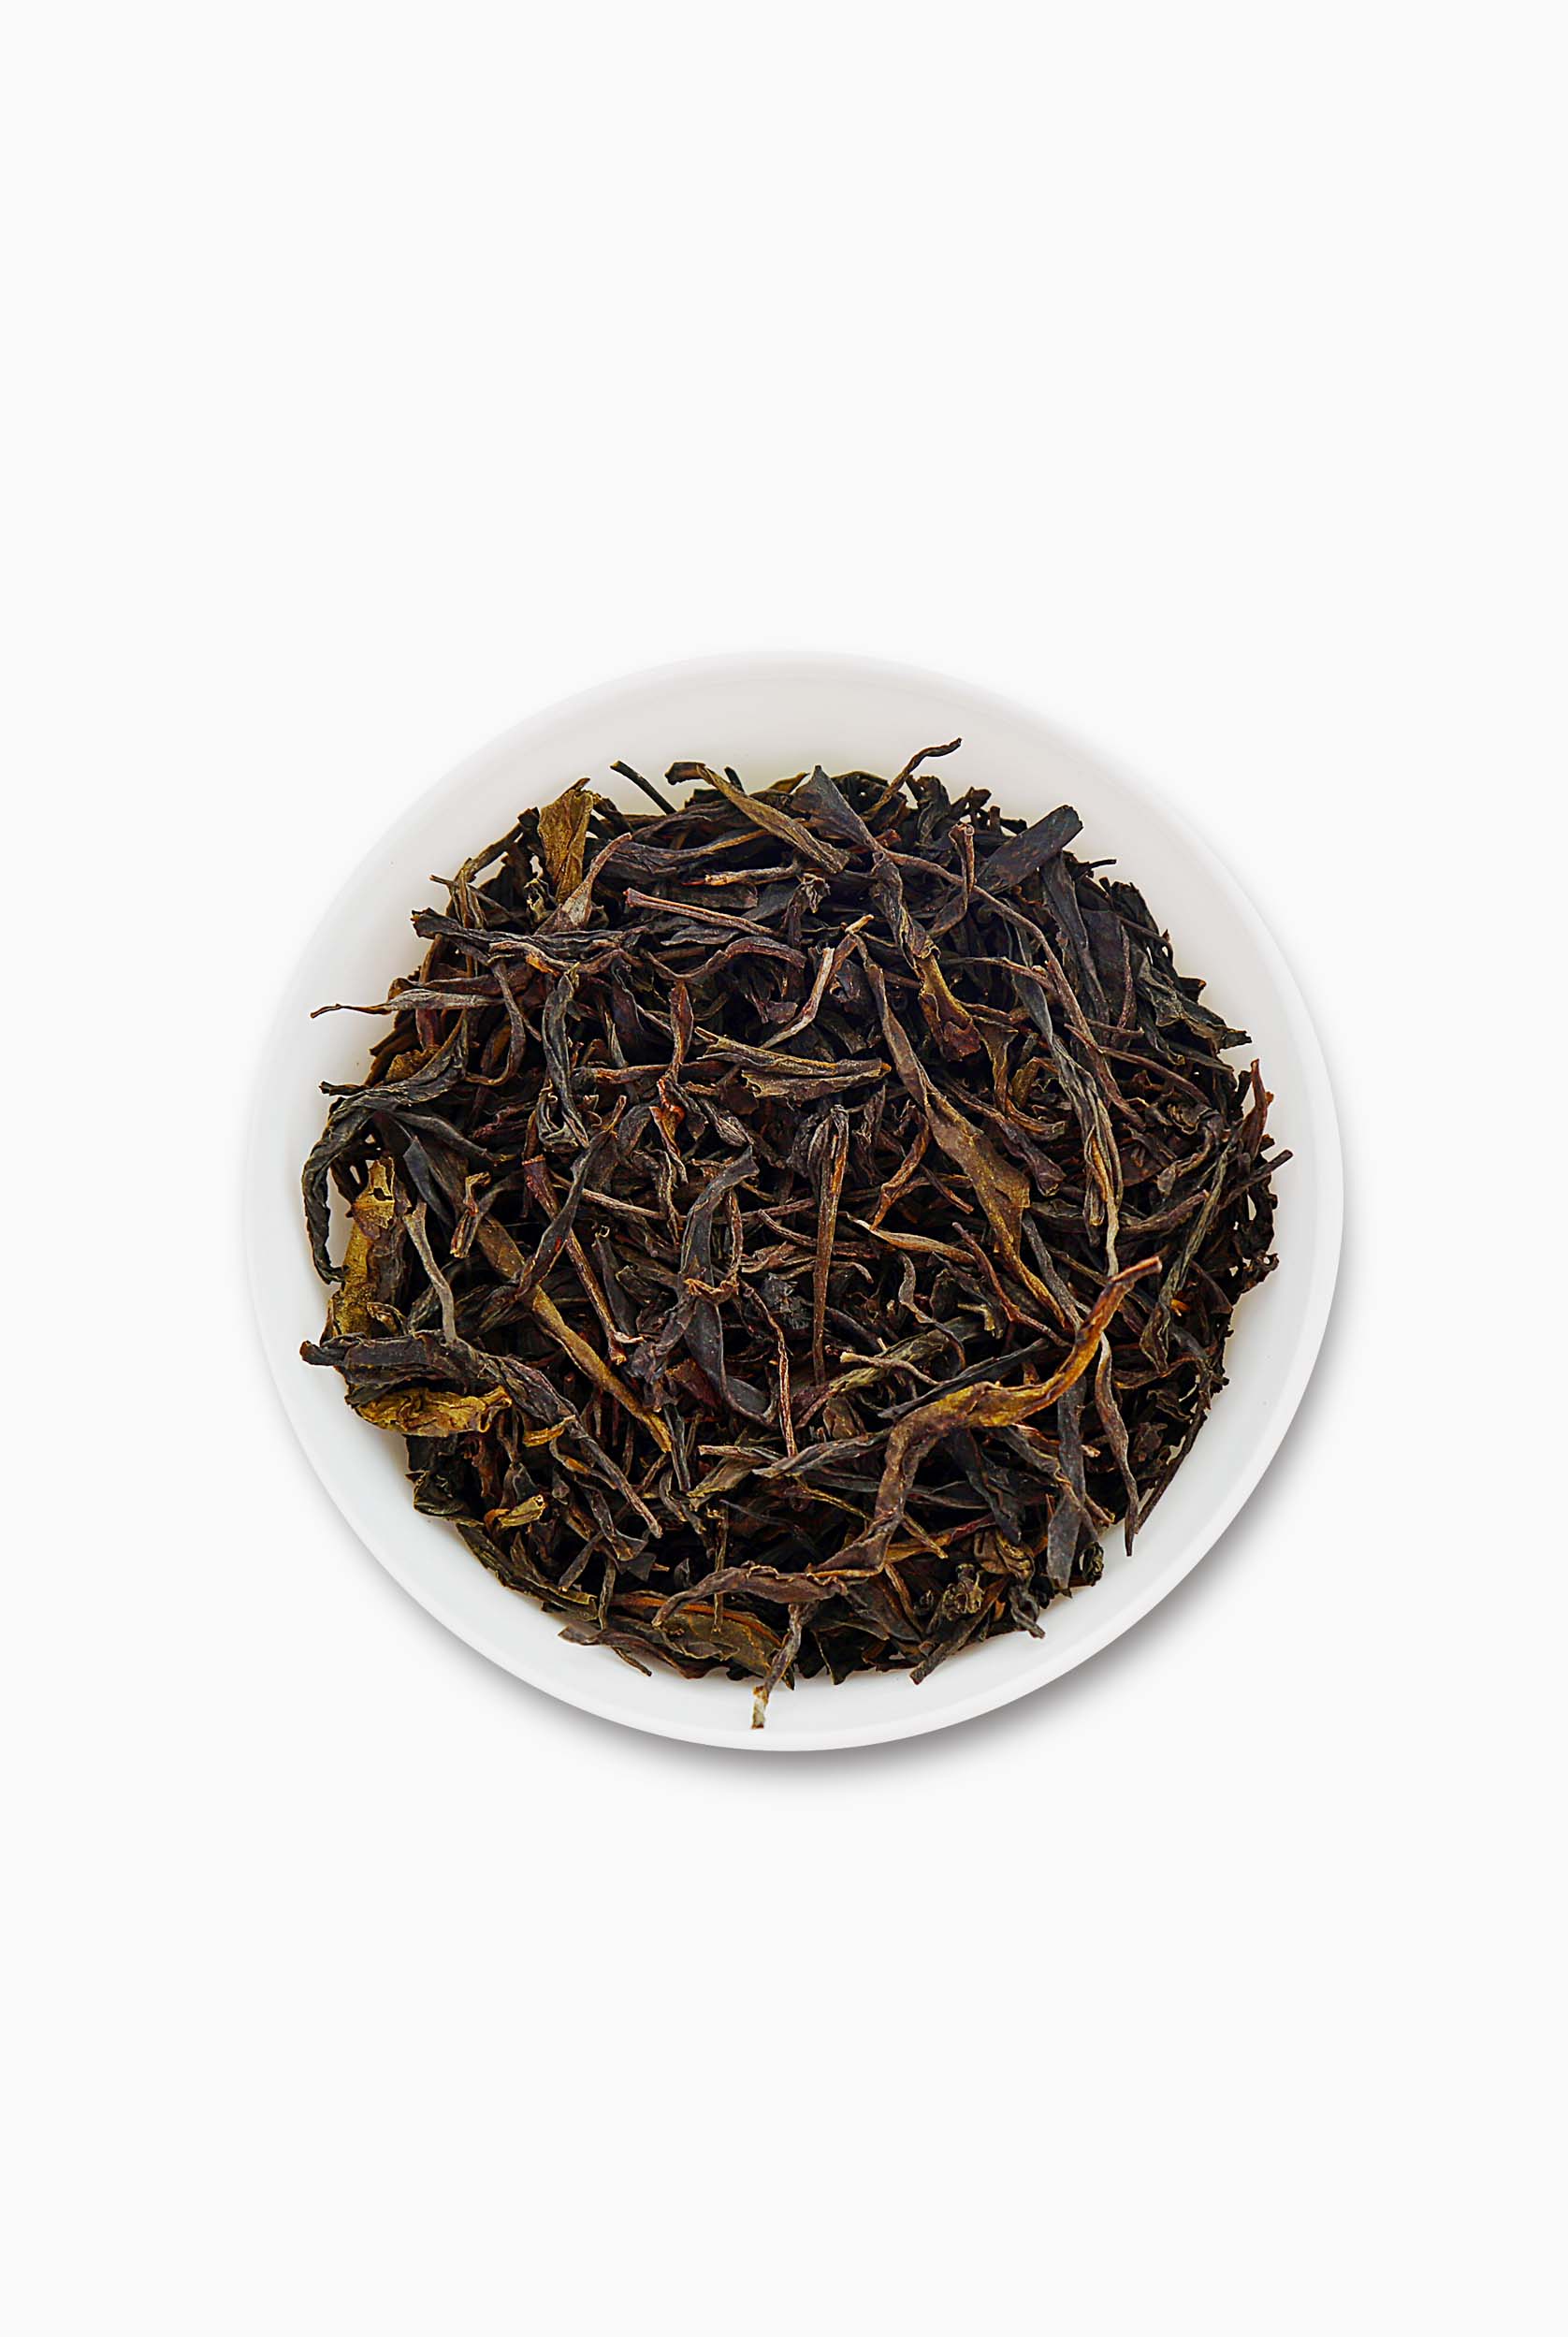 Whole Leaf Organic Oolong Tea - Teacupsfull